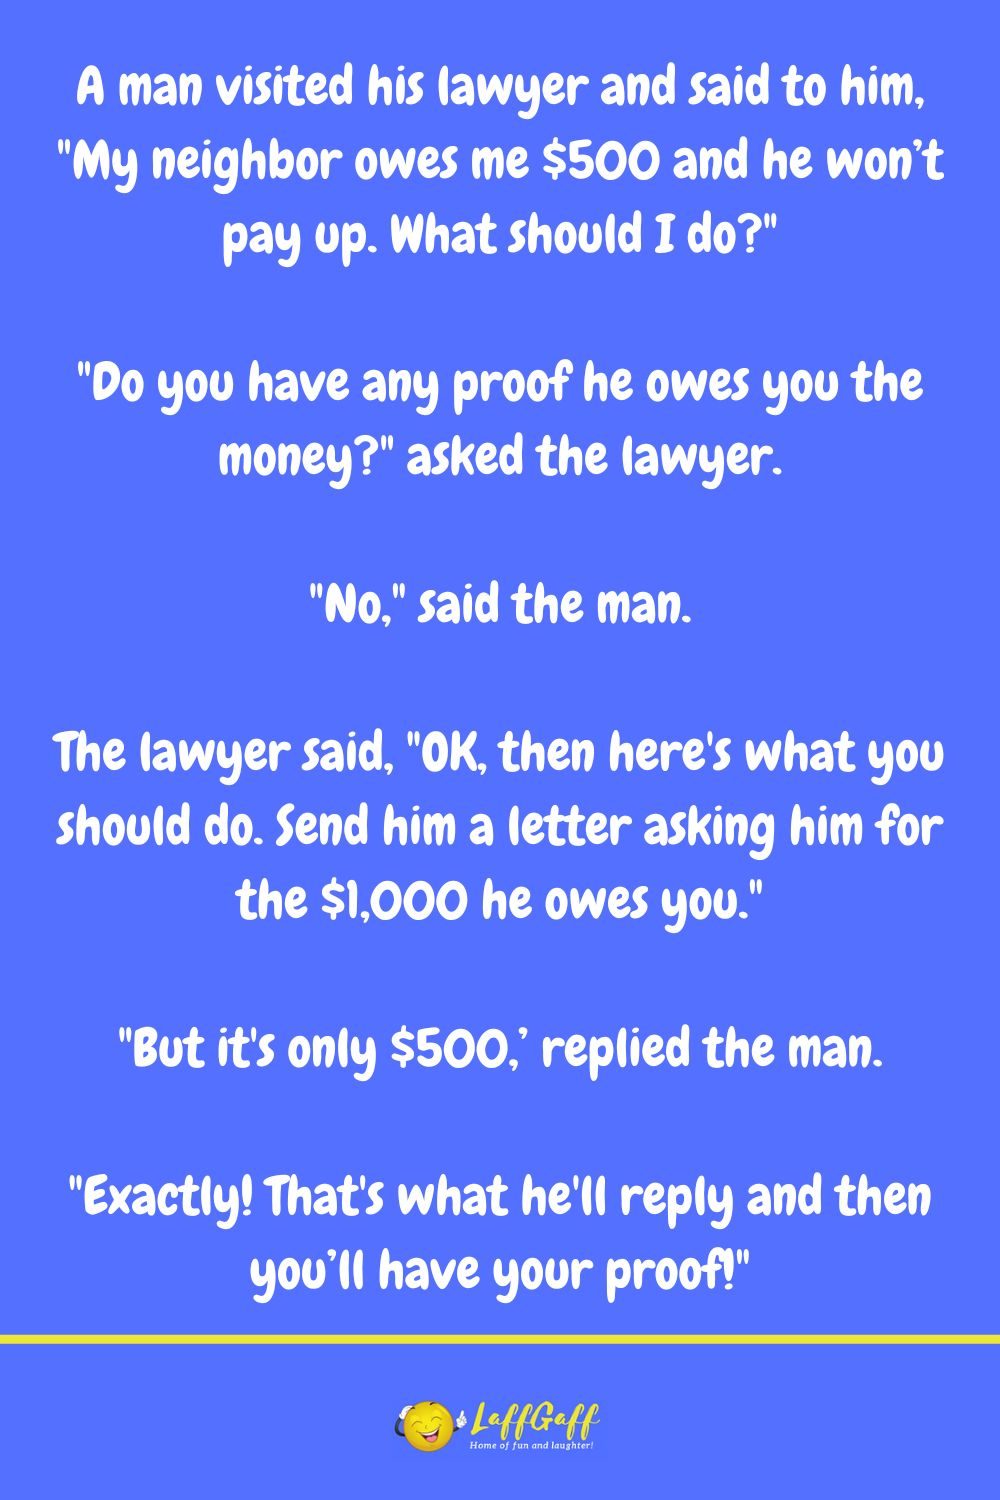 Lawyer advice joke from LaffGaff.